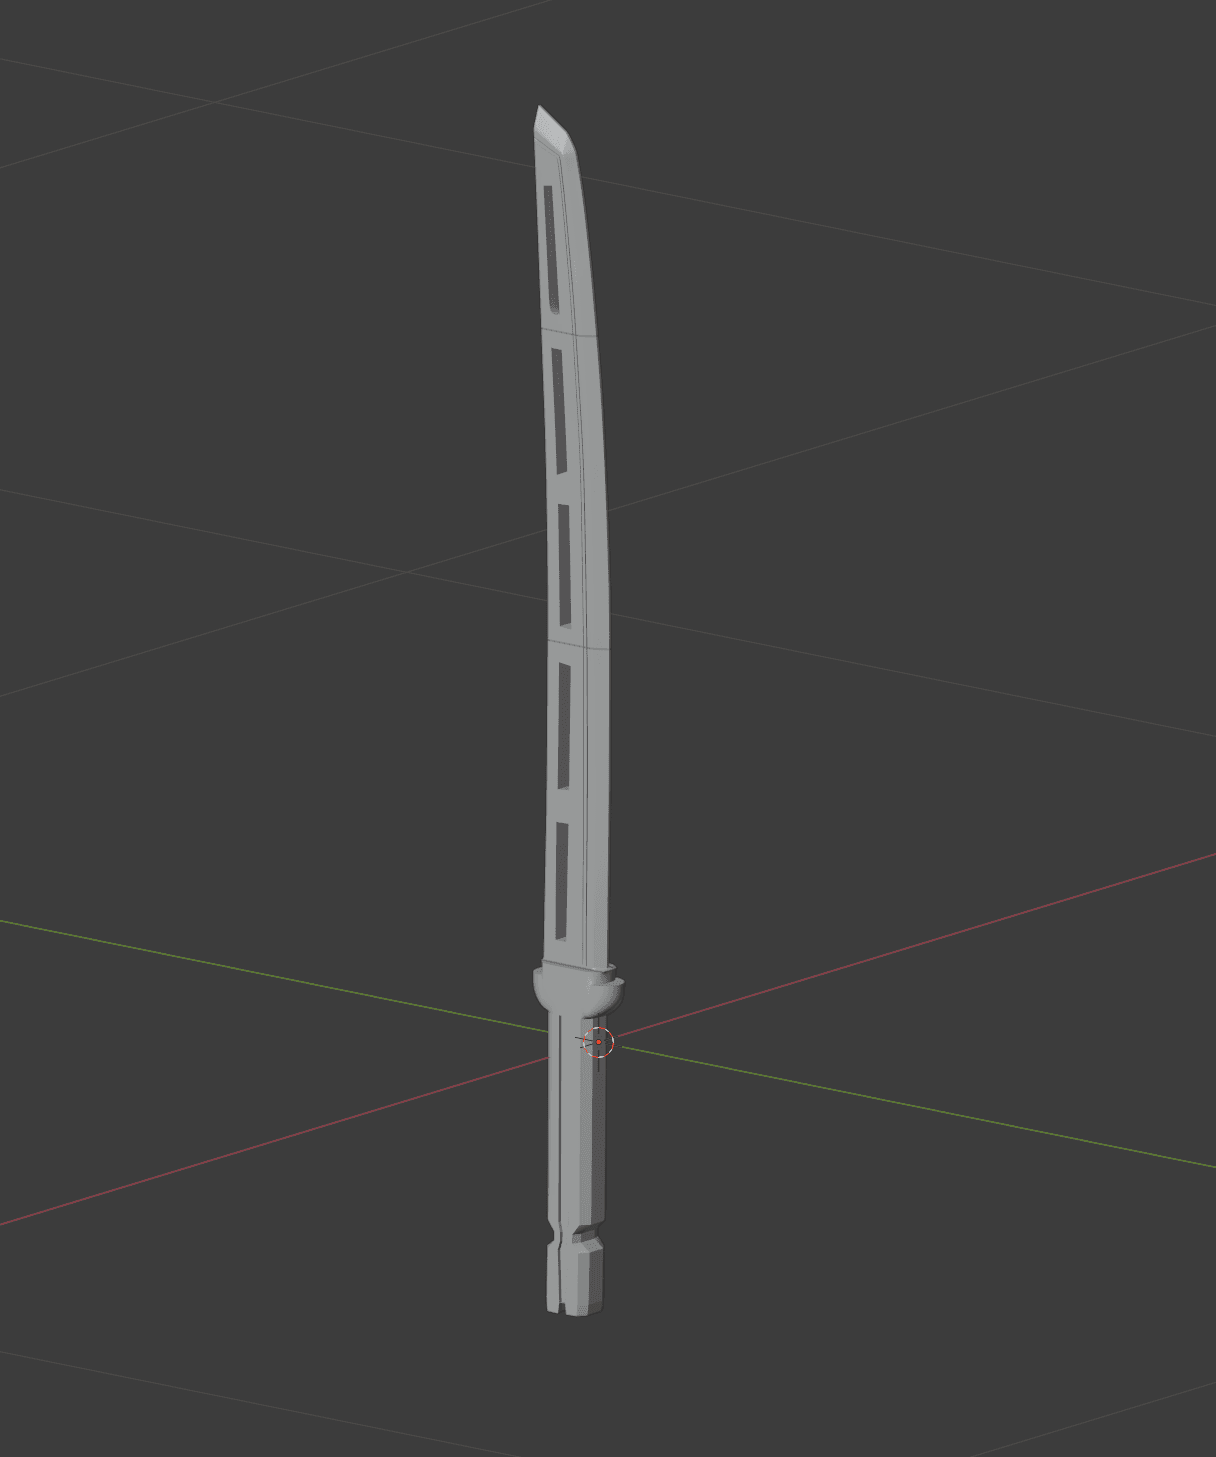 Ronin Sword from Hawkeye 3d model